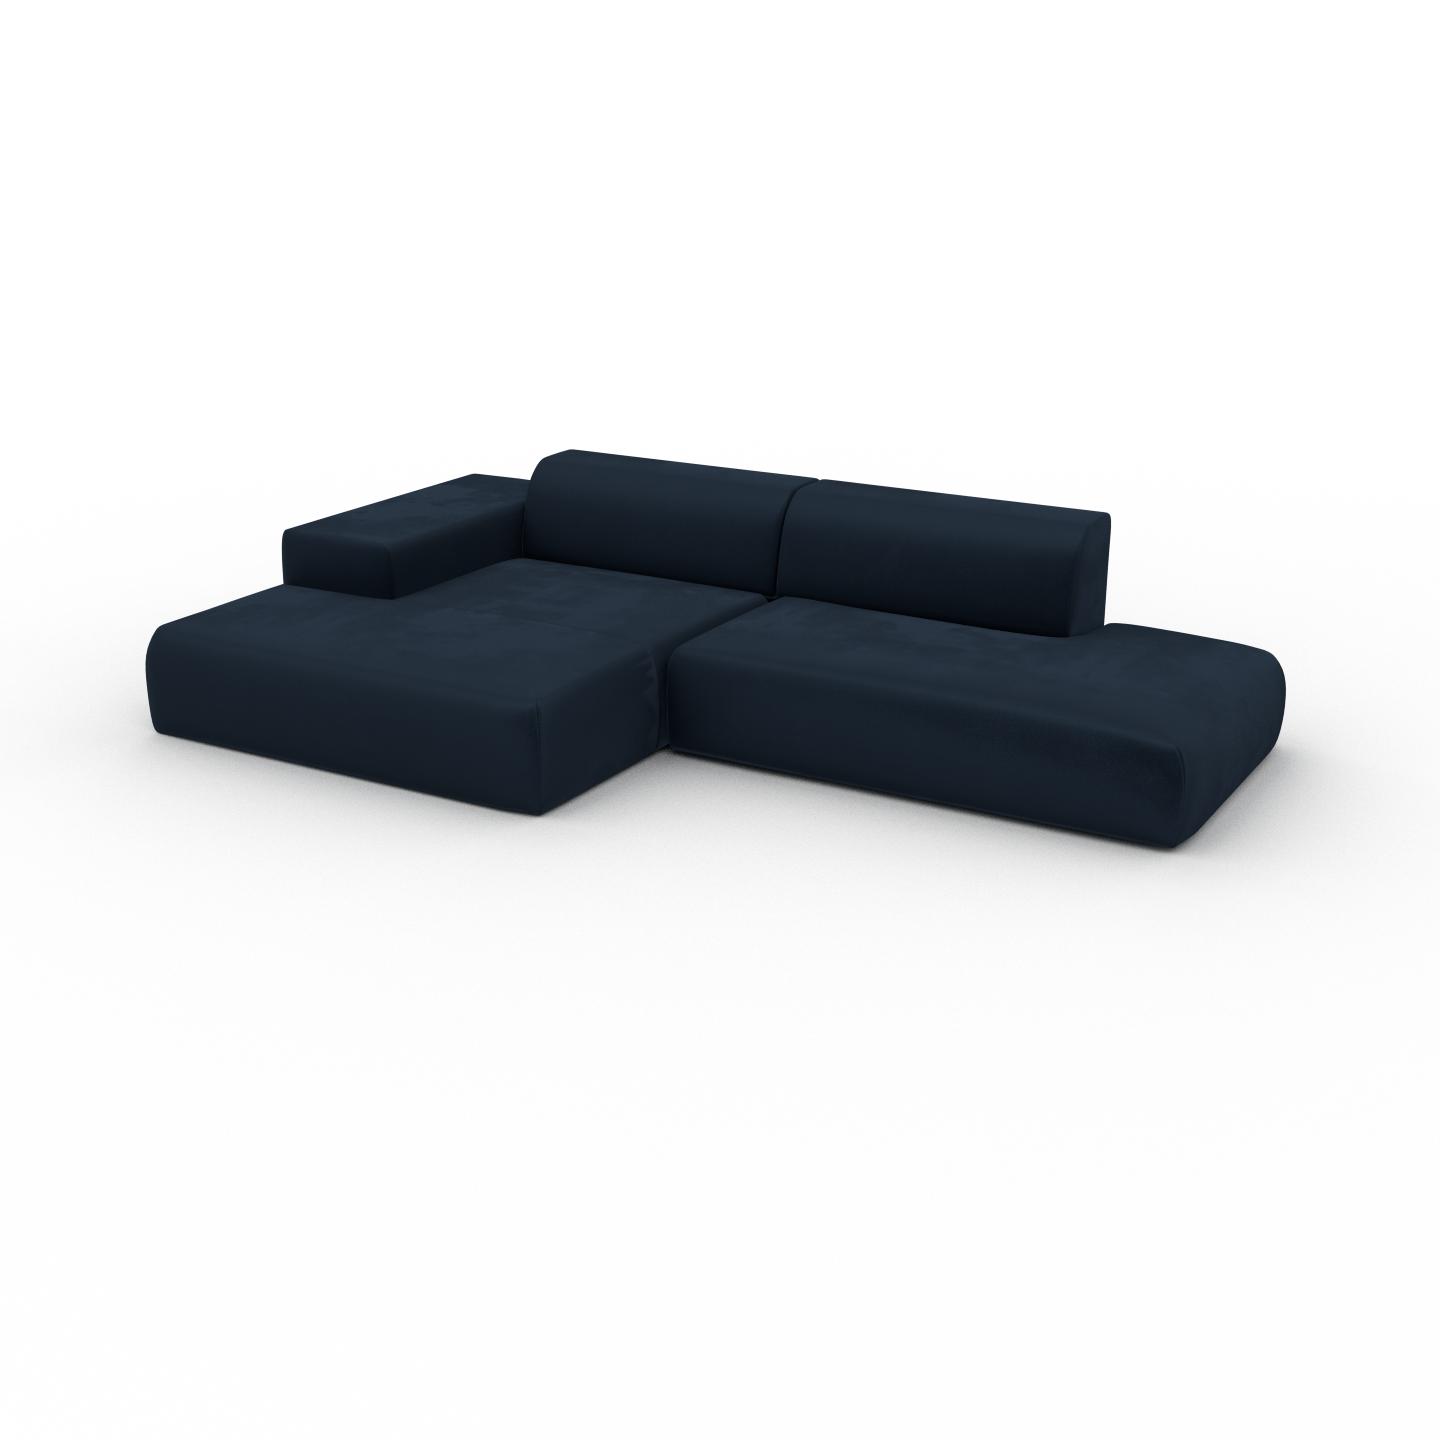 MYCS Ecksofa Samt Nachtblau - Flexible Designer-Polsterecke, L-Form: Beste Qualität, einzigartiges Design - 310 x 72 x 168 cm, konfigurierbar